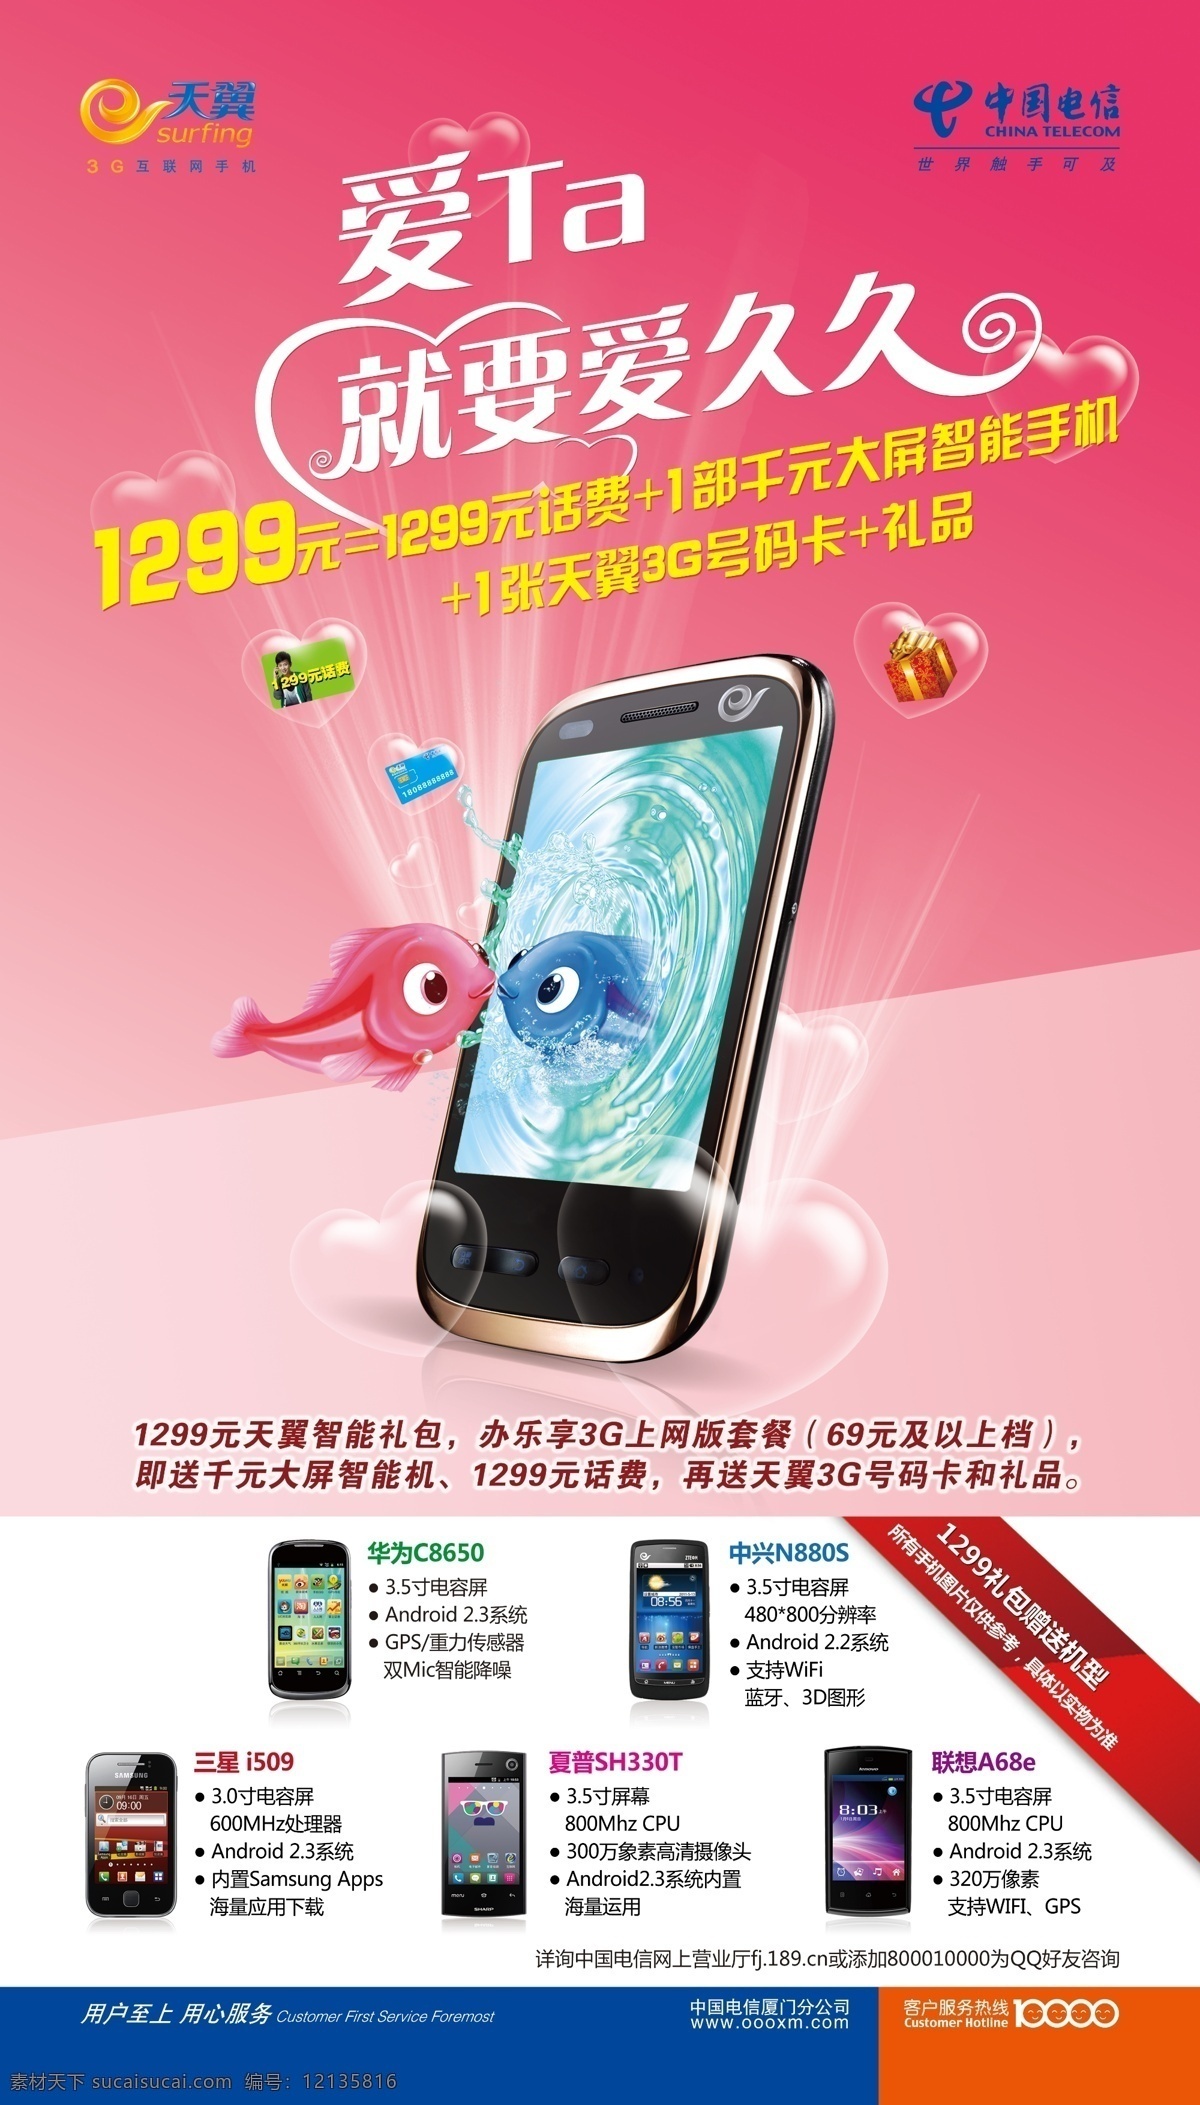 960海报 手机海报 电信标志 天翼标志 礼包 气泡 鱼 桃心 光线 手机宣传 爱 就要 久久 广告设计模板 源文件